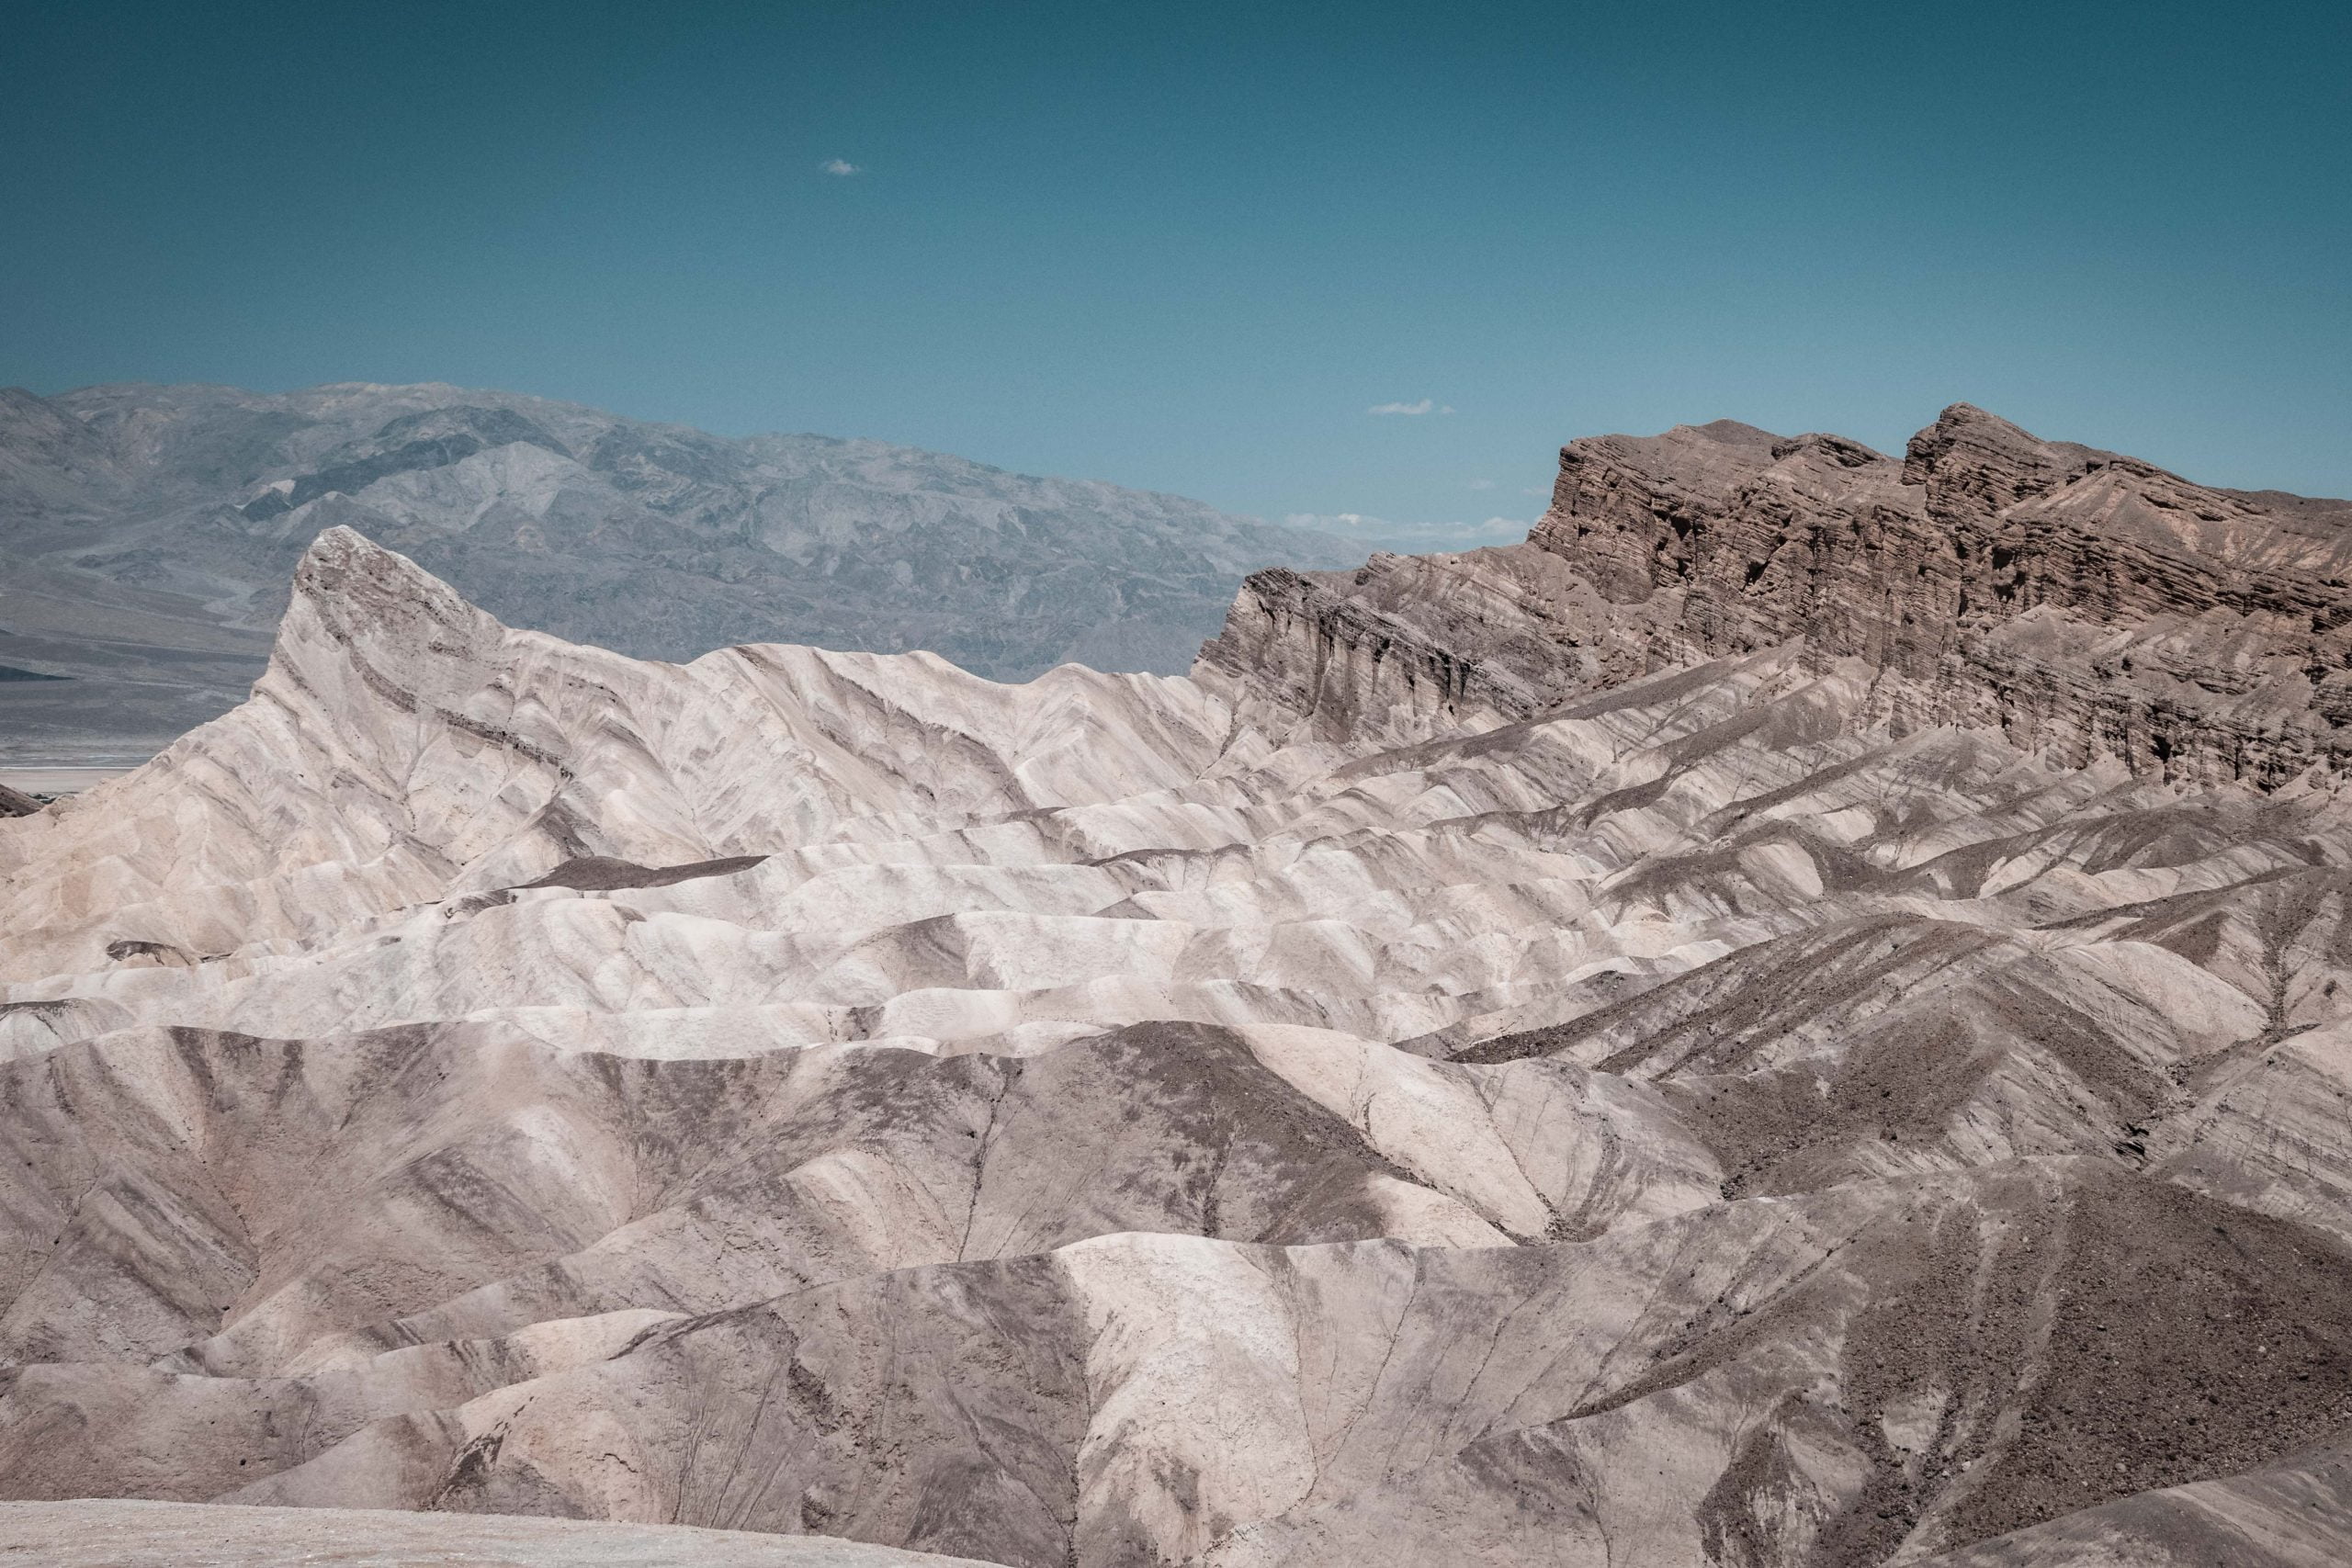 Zabriskie Point - Death Valley